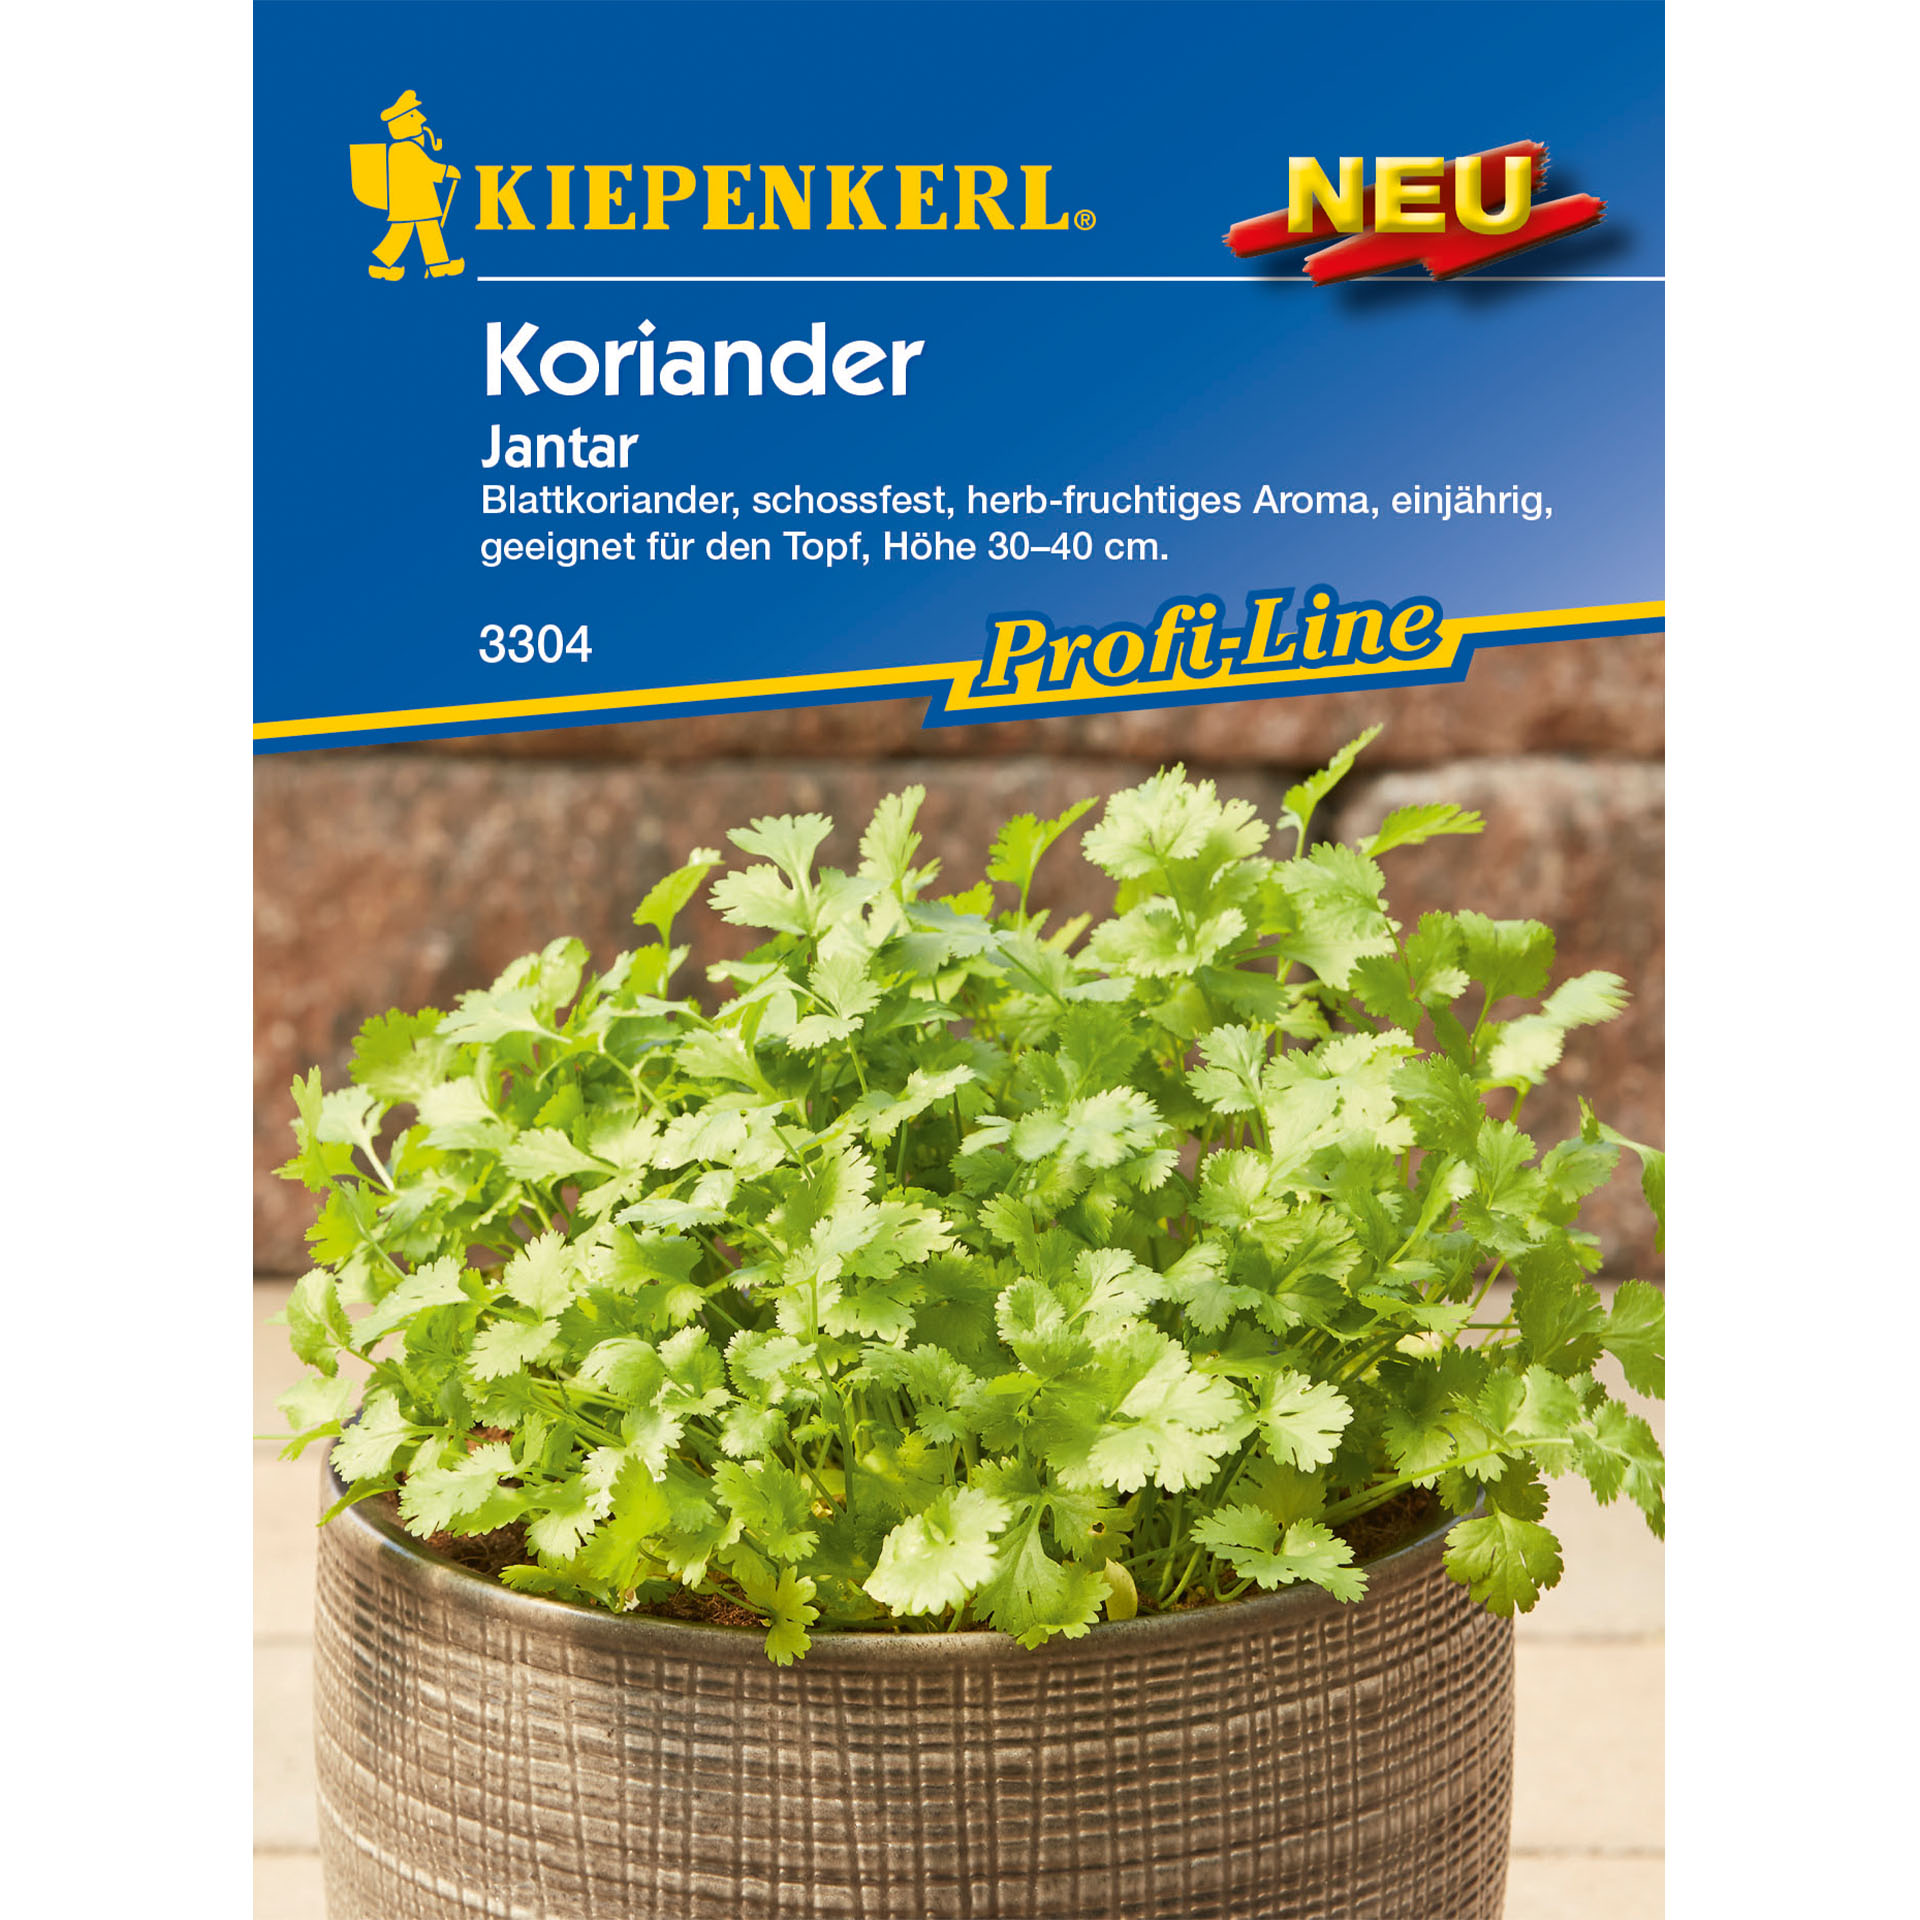 Koriander / Blattkoriander Jantar, Kräutersamen